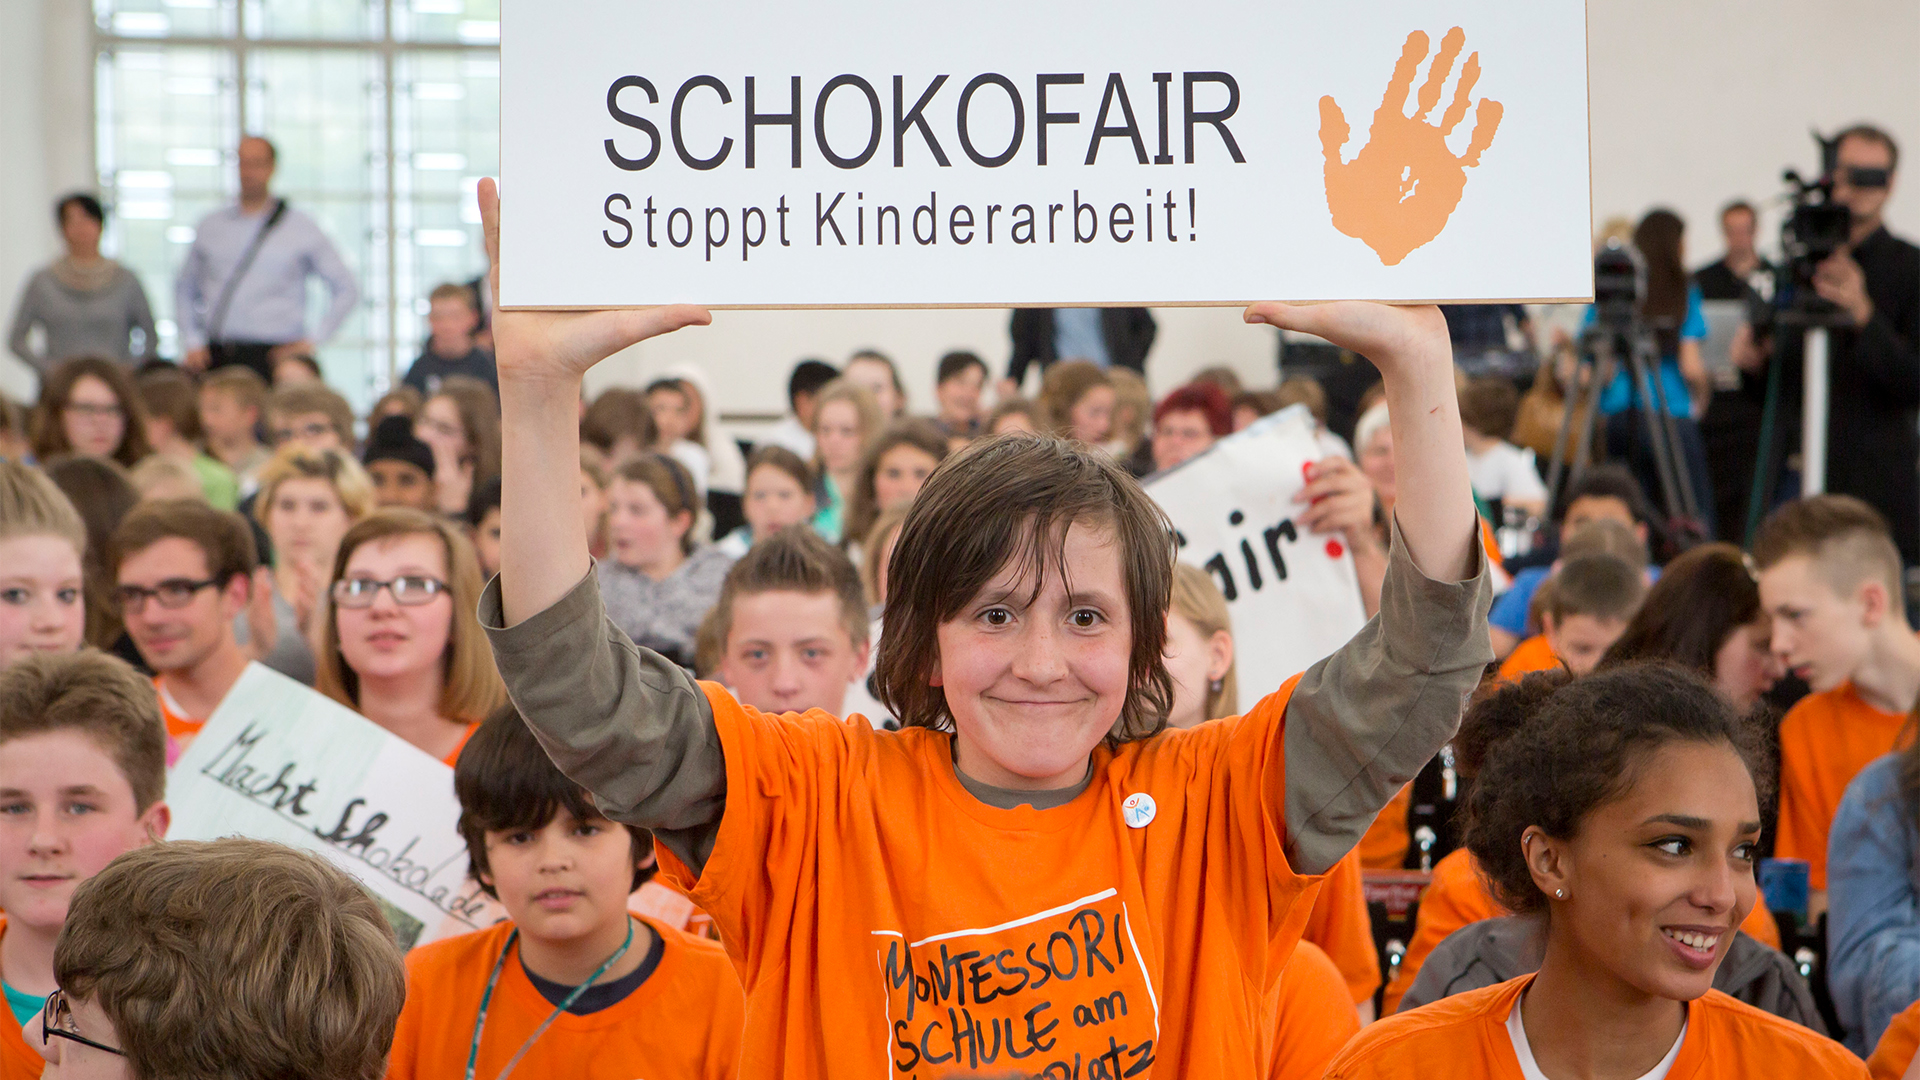 Ein Junge ein Plakat mit der Aufschrift "SCHOKOFAIR Stoppt Kinderarbeit!" in die Höhe. | picture alliance / dpa